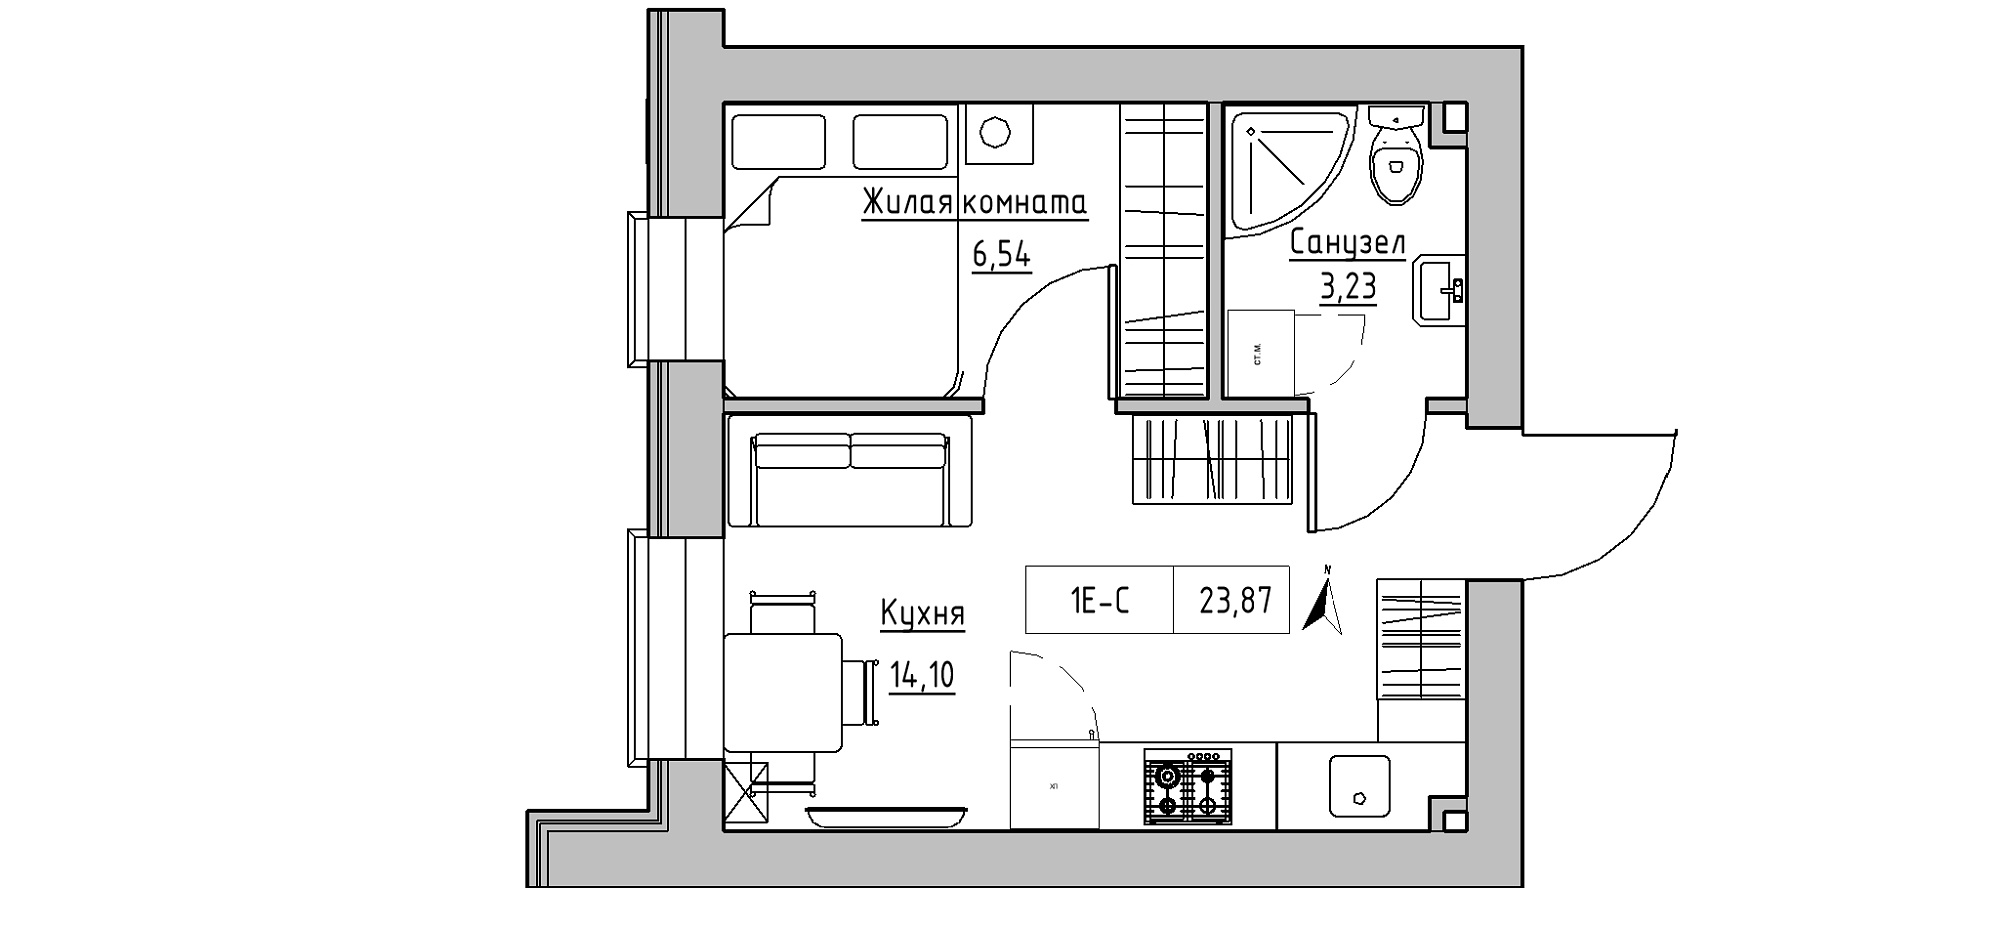 Планування 1-к квартира площею 23.87м2, KS-020-02/0012.